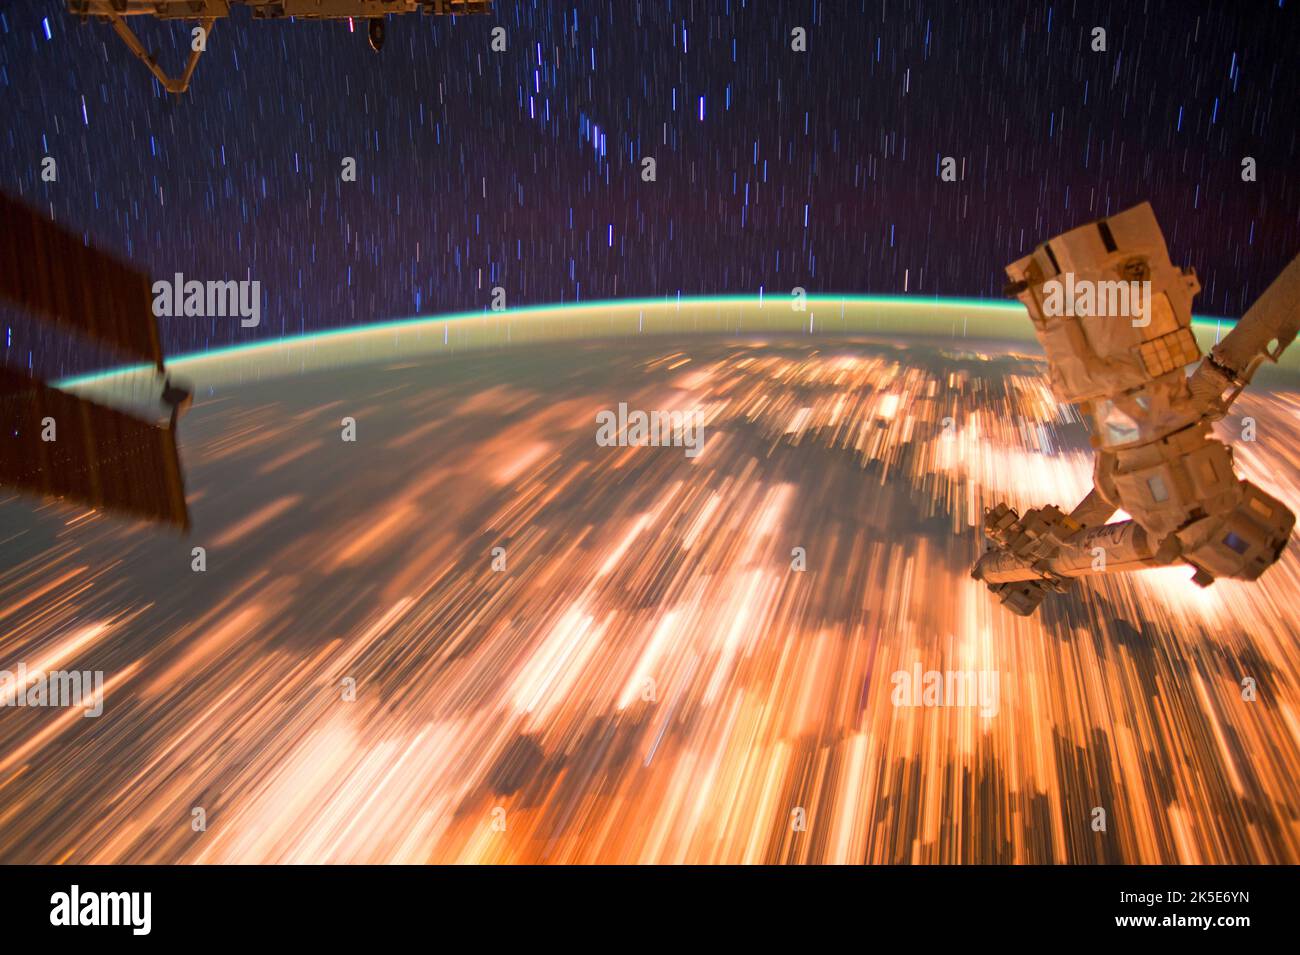 Les astronautes de la Station spatiale internationale ont capturé une série d'incroyables images de pistes étoiles le 3 octobre 2016, alors qu'ils étaient en orbite à 17 500 miles par heure. La station orbite la Terre toutes les 90 minutes, et les astronautes à bord voient en moyenne 16 levers et couchers de soleil toutes les 24 heures. Une version unique d'une image originale de la NASA. Crédit: NASA? Banque D'Images